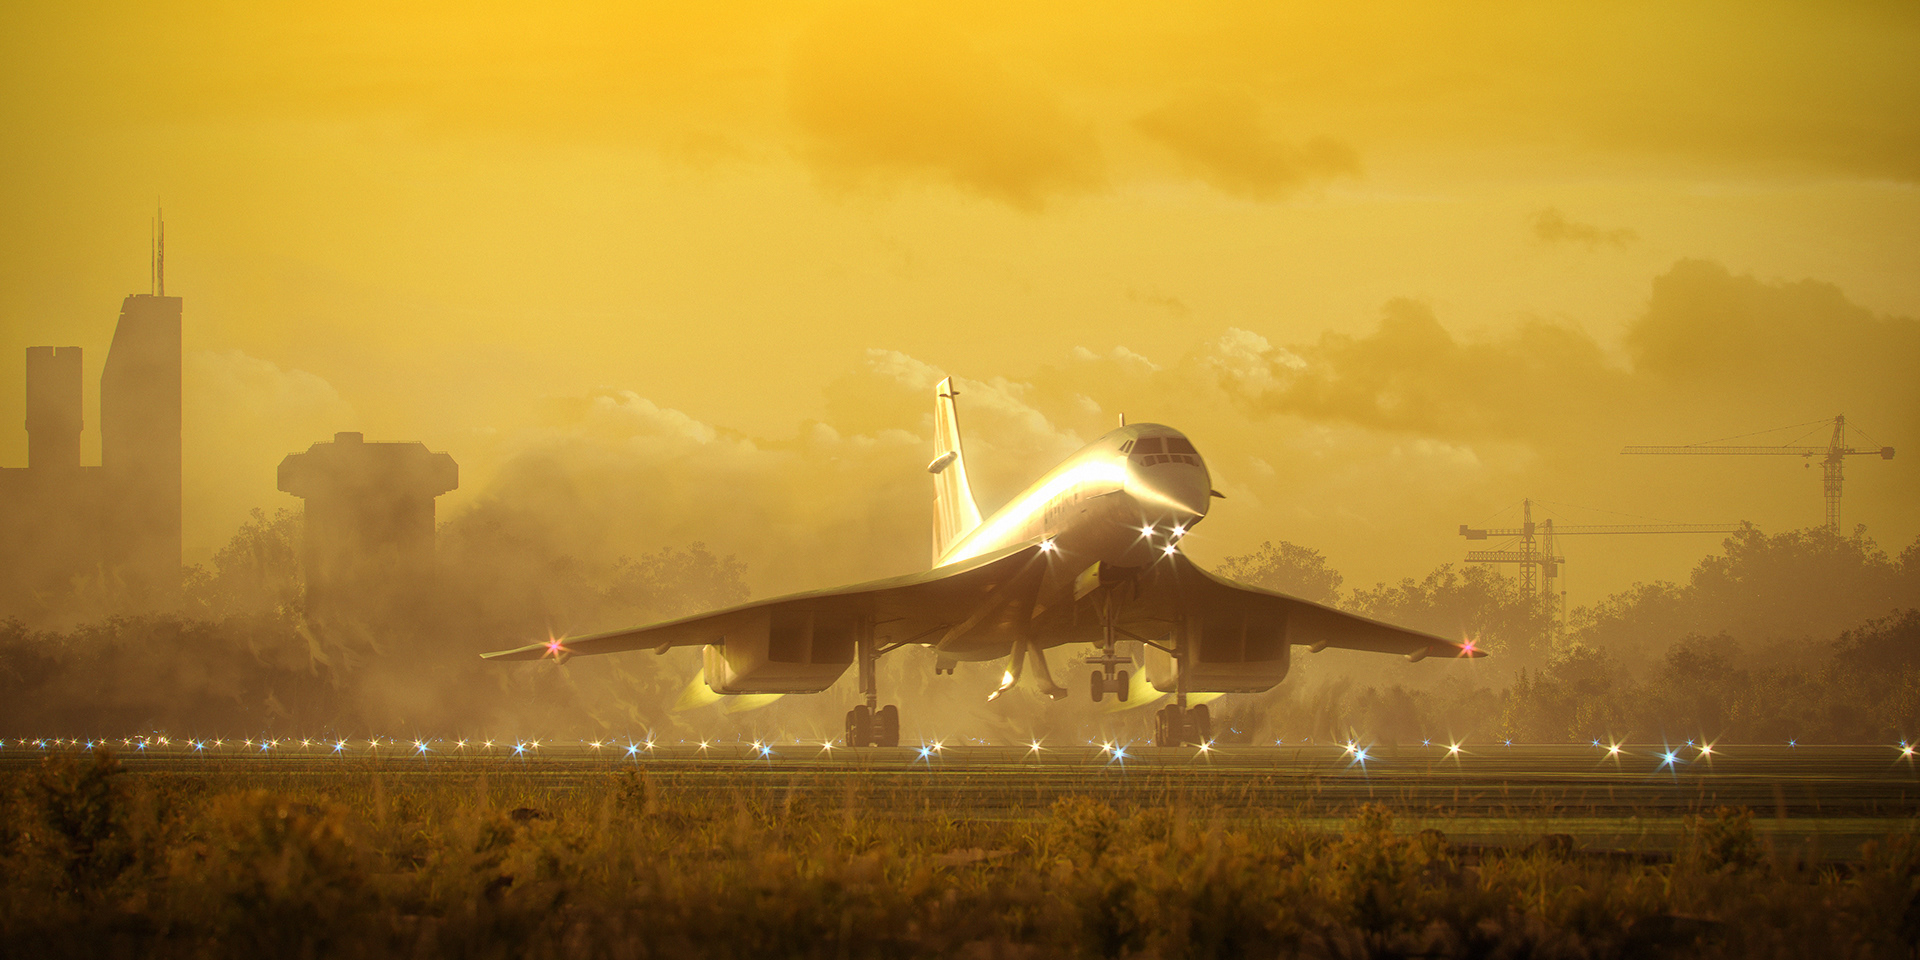 CGI Tribute to Concorde